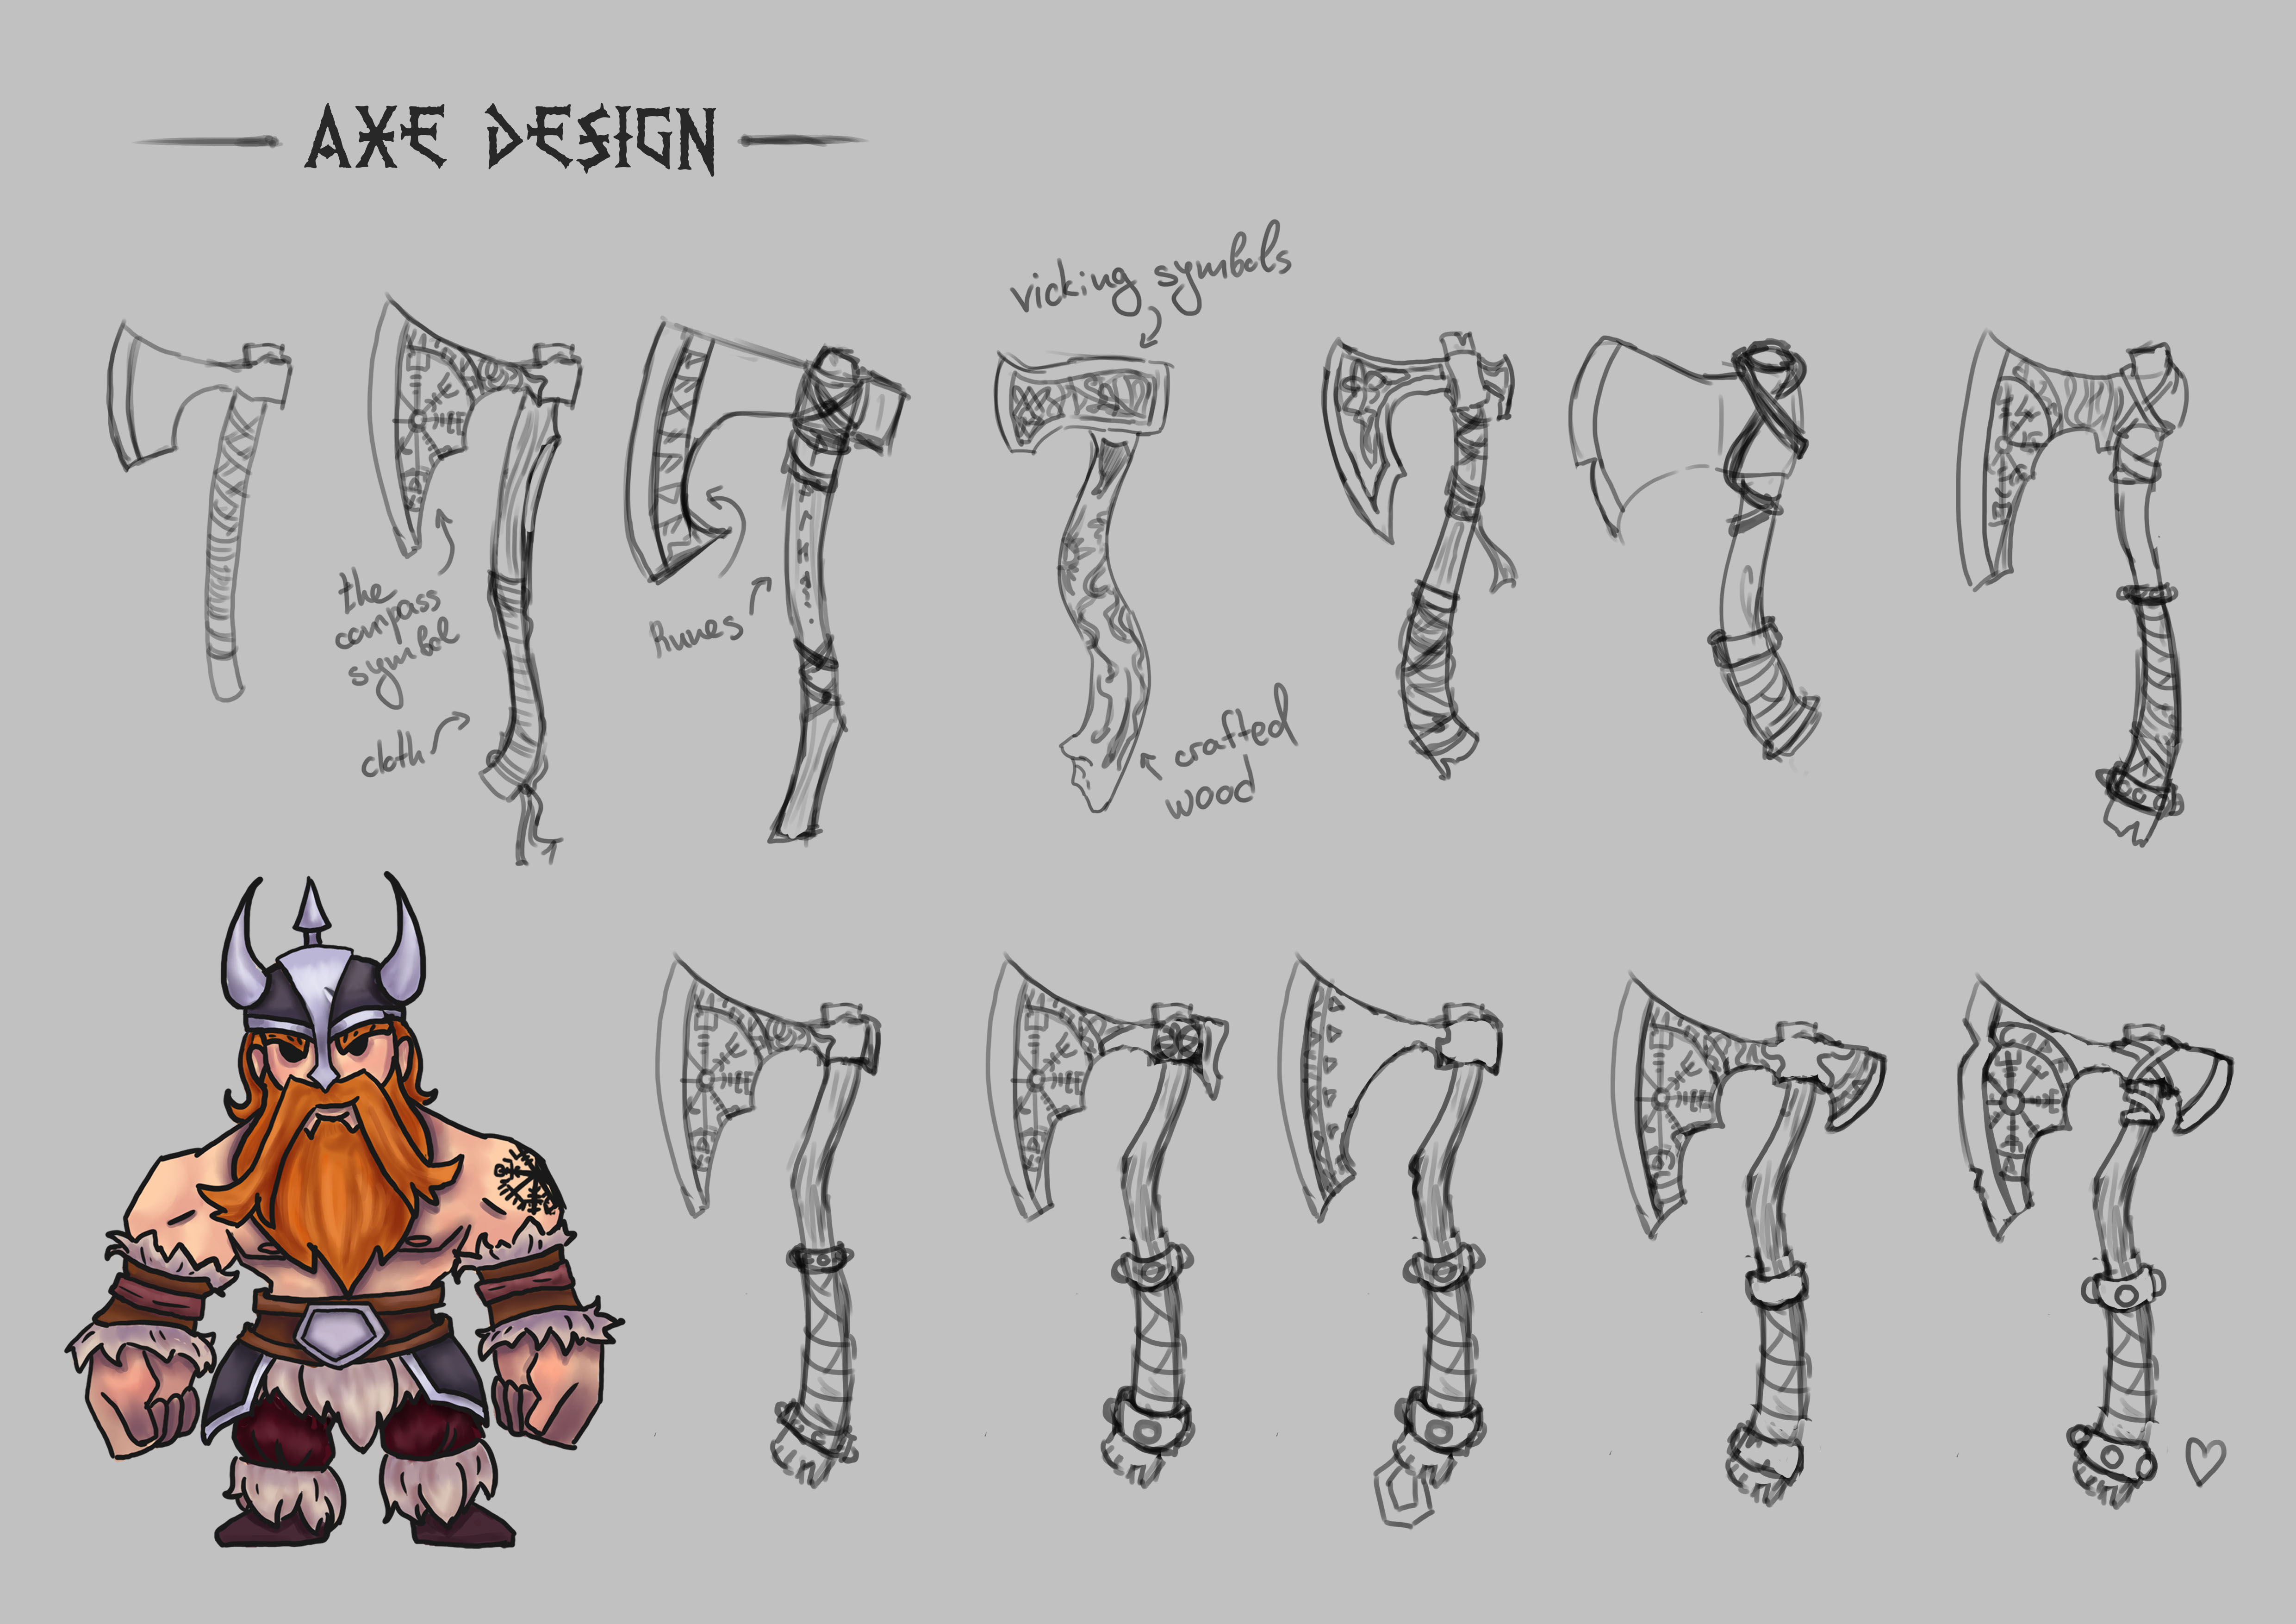 Axe designs